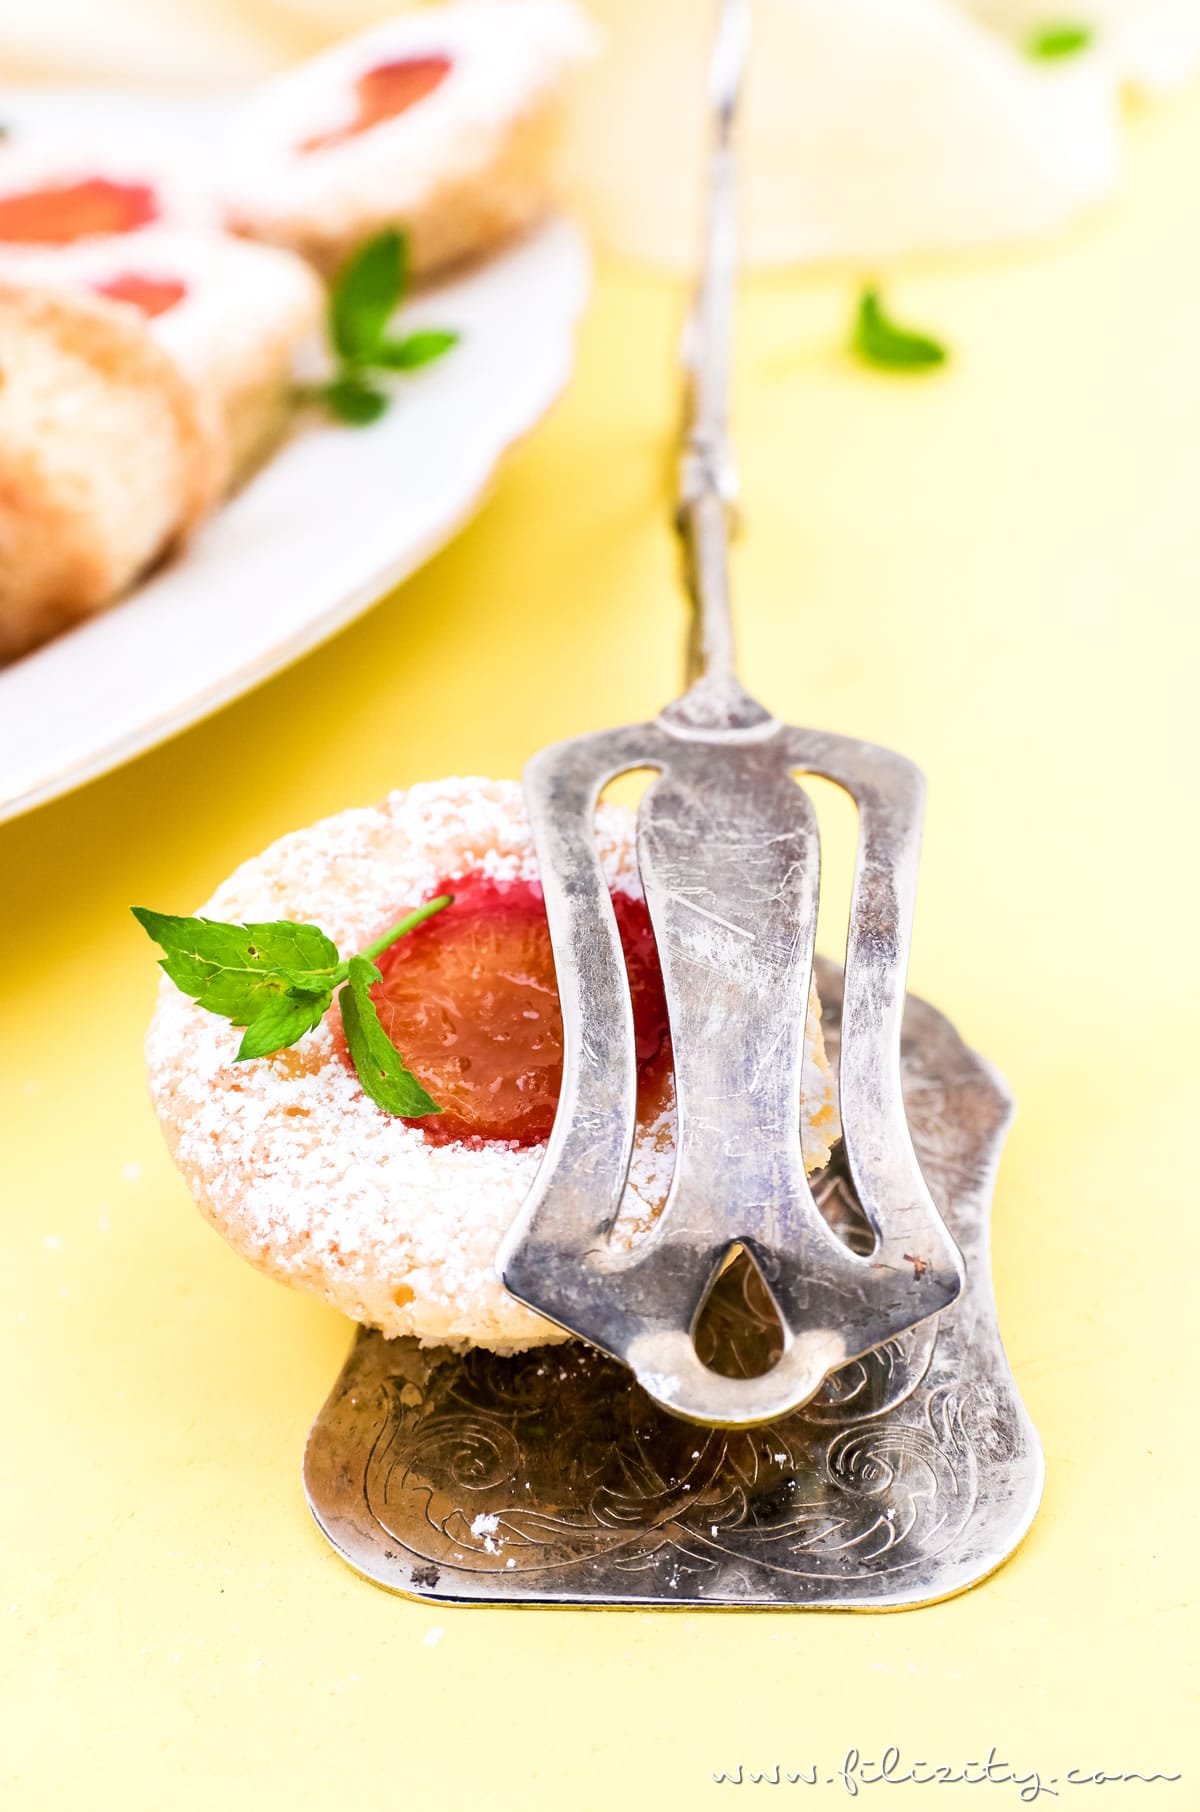 Einfaches Rezept für Kirschpflaumen-Muffins mit Kokos | Auch mit Mirabellen oder als Blechkuchen backen | Filizity.com | Food-Blog aus dem Rheinland #kirschpflaumen #sommer #mirabellen